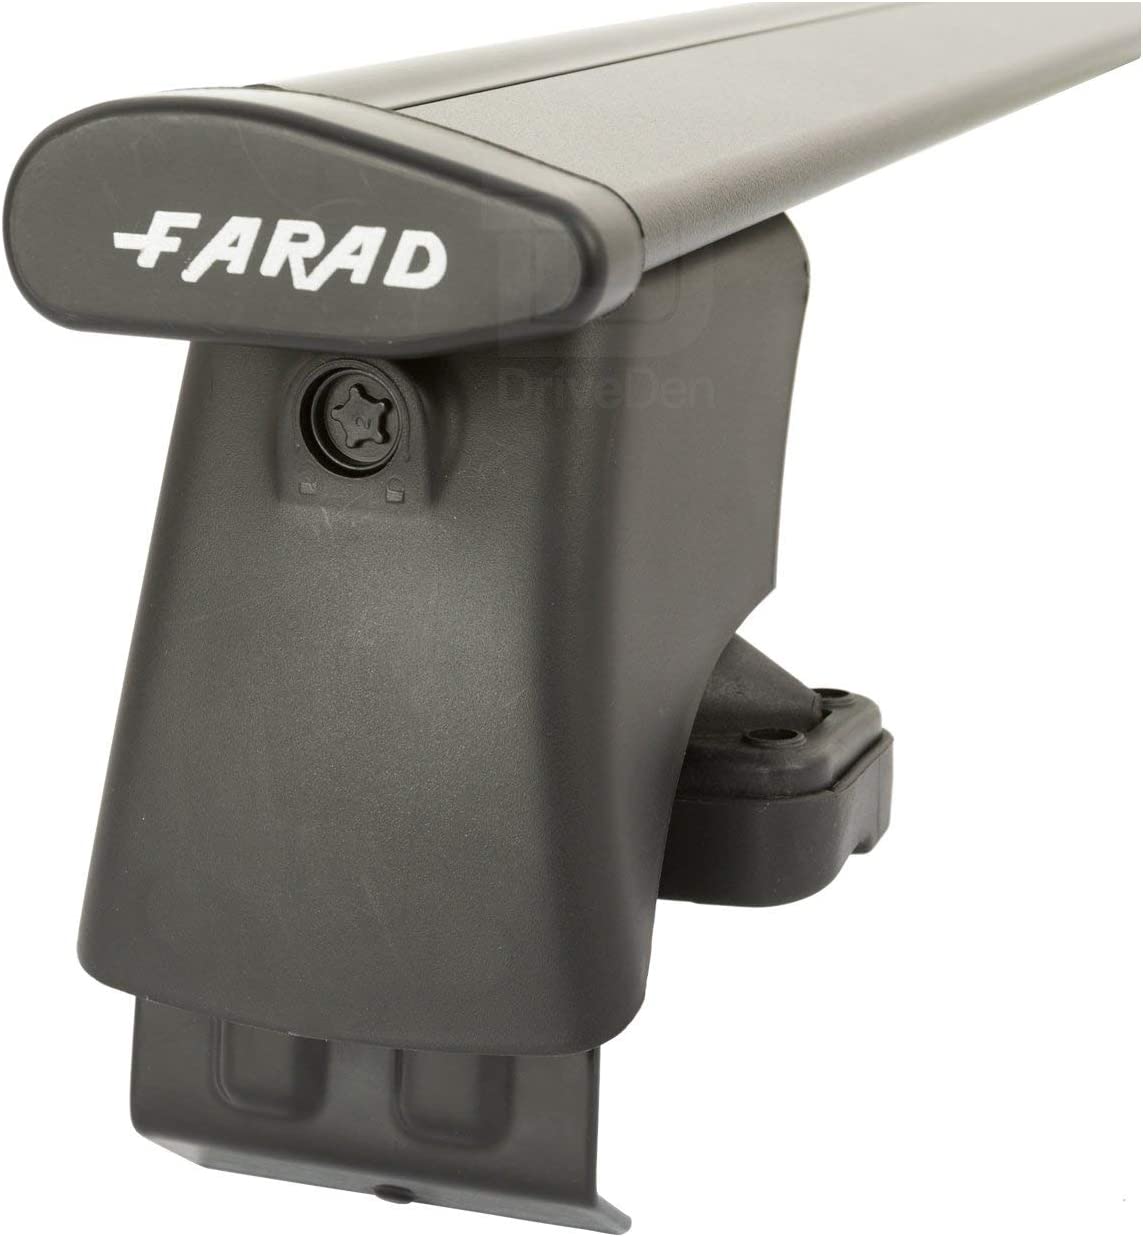 FARAD-Kit H2 per barre portatutto - Ford Fiesta 2002-2008 (senza corrimano)